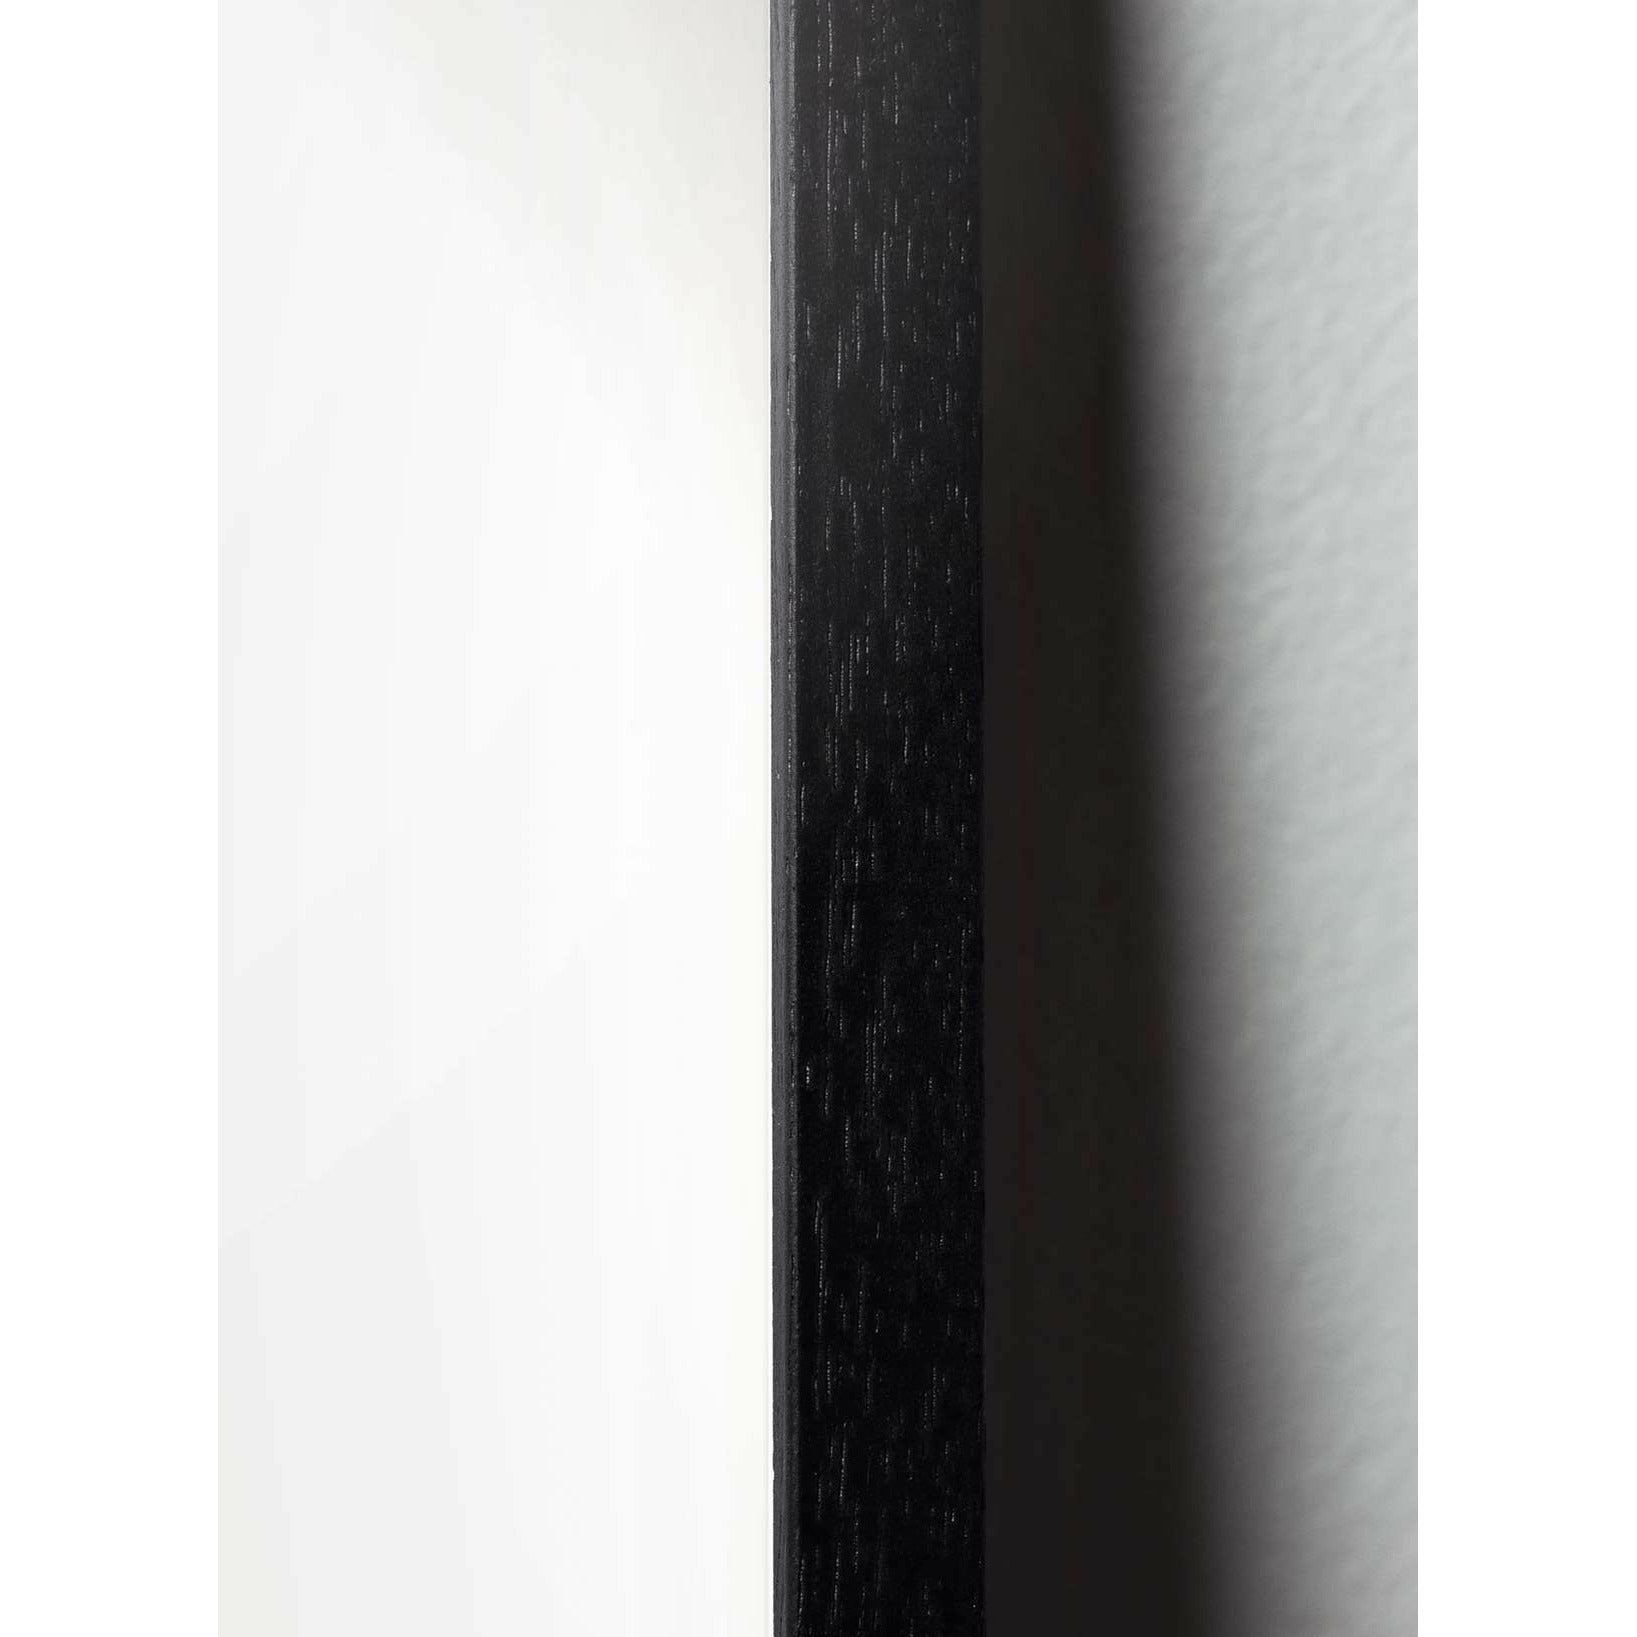 brainchild Poster Classic Caster Cone, cadre en bois laqué noir 50x70 cm, fond de sable de sable